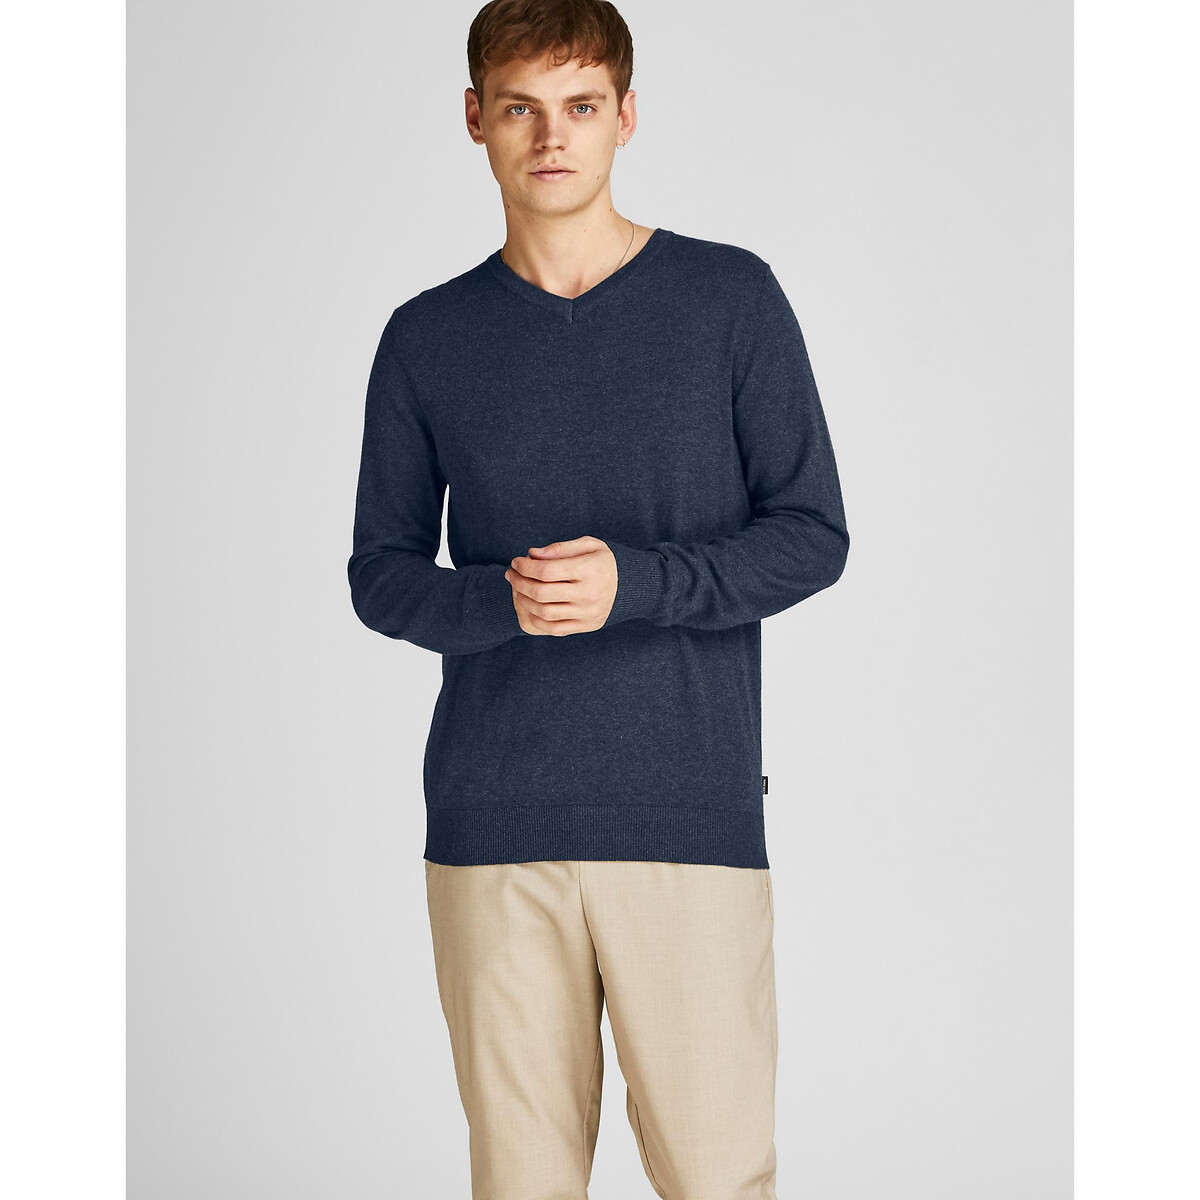 Пуловер С V-образным вырезом XL синий